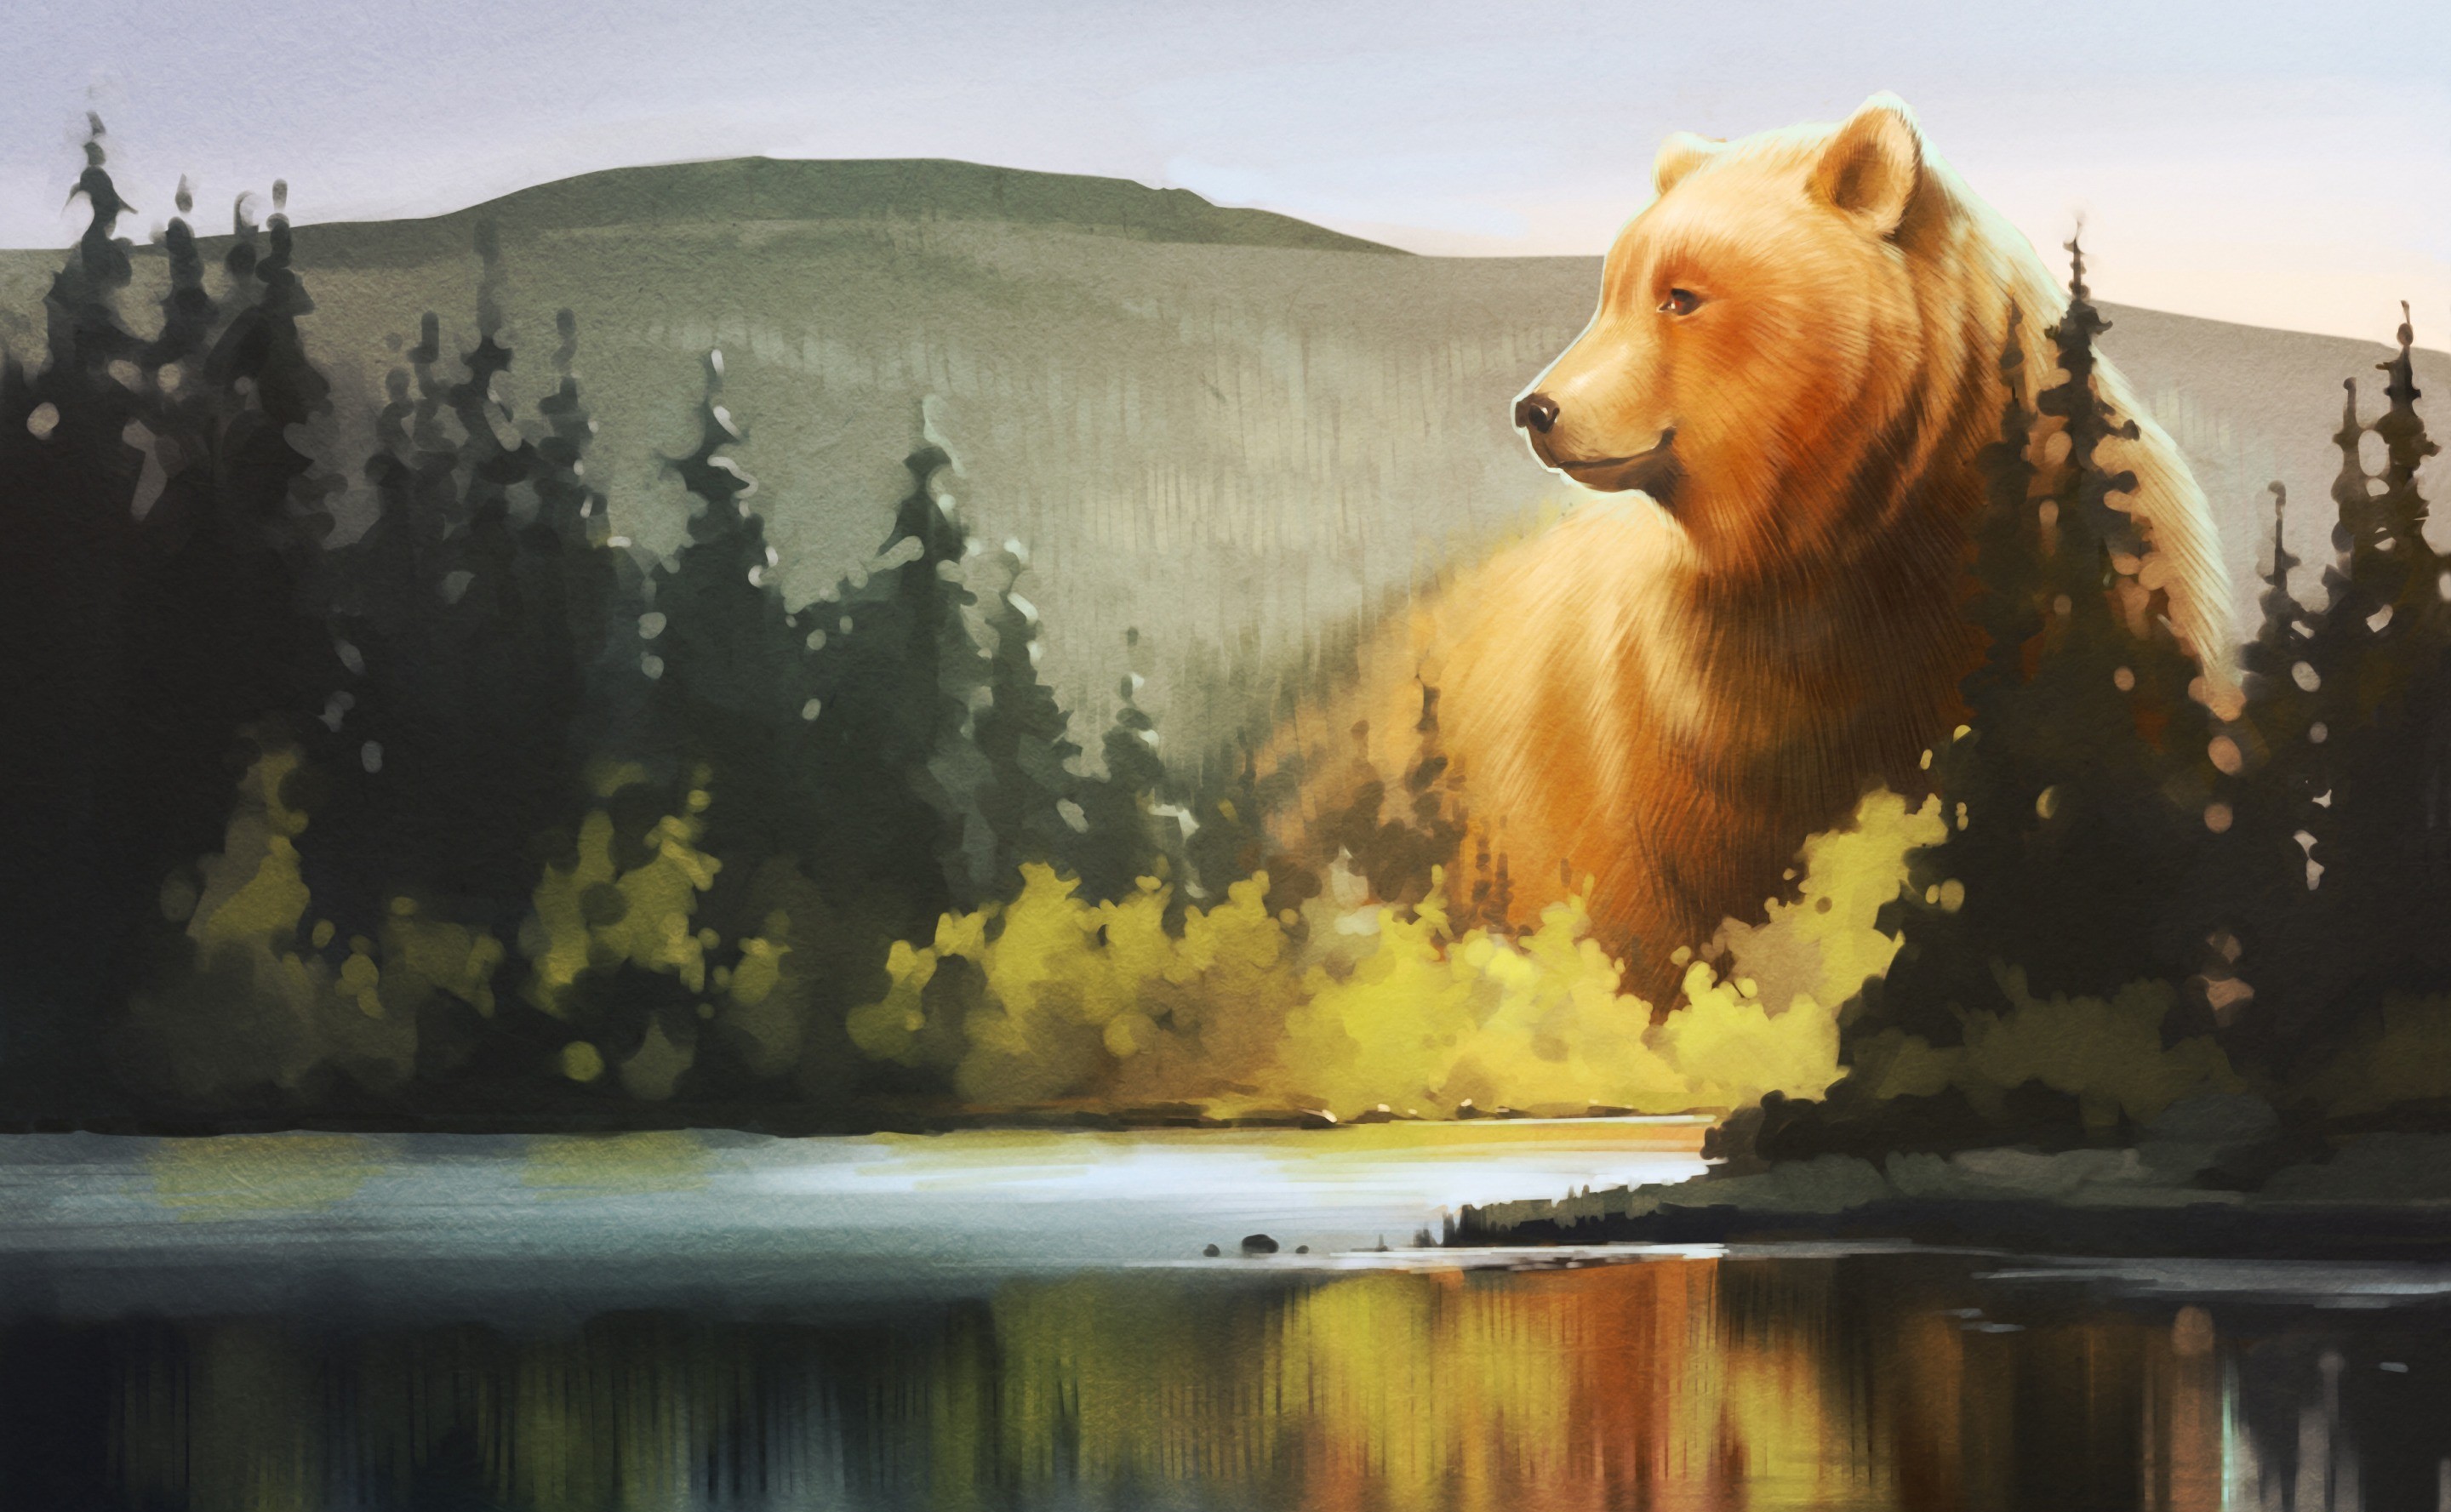 Пейзаж с медведями